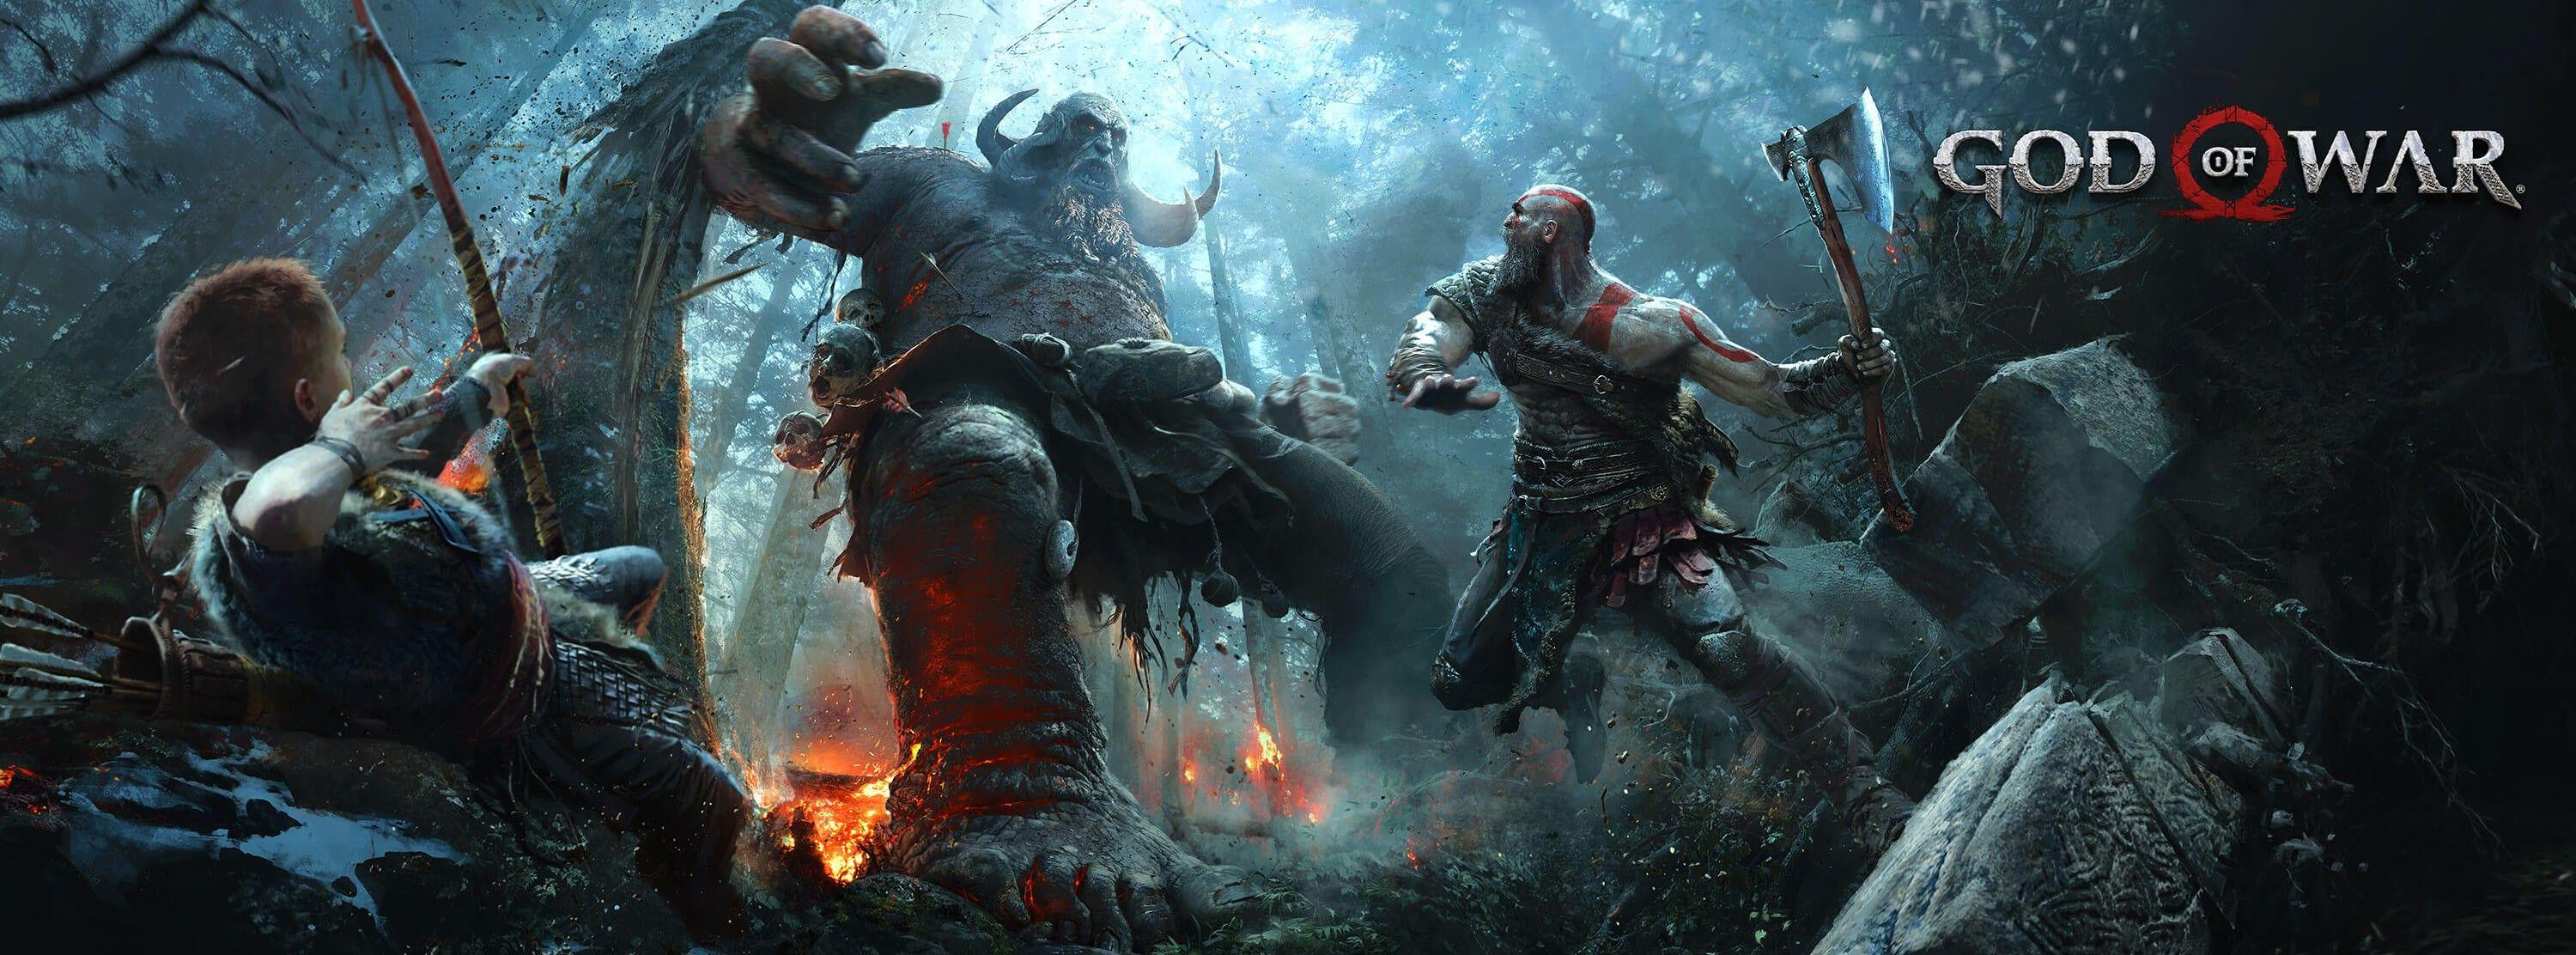 Wallpaper, video games, valhalla, mythology, God of War, Kratos